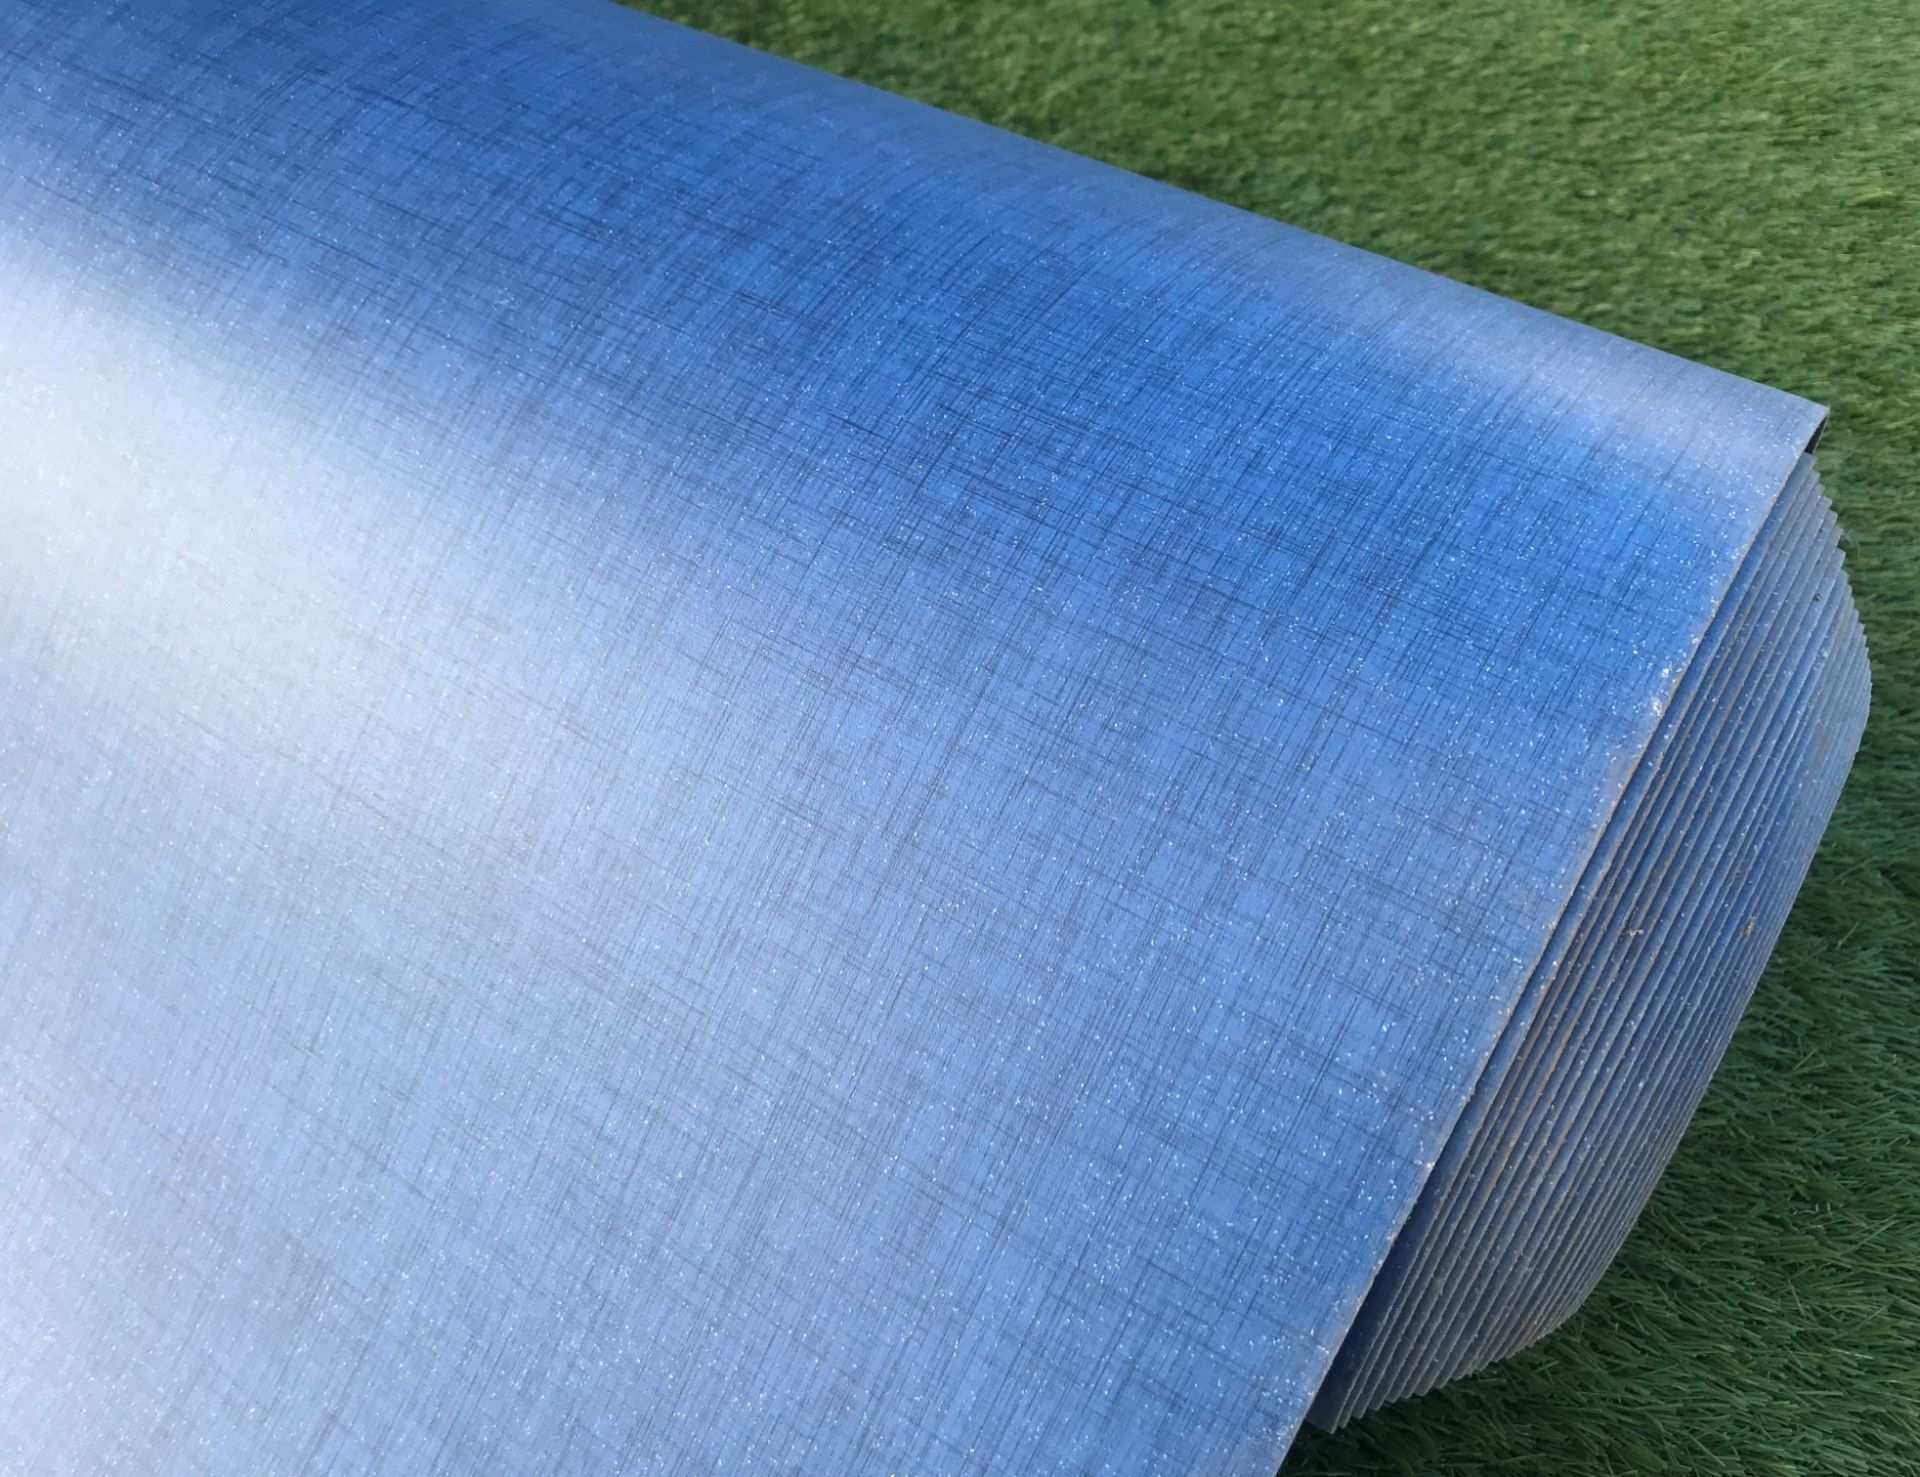 1 x GERFLOR Tarkett Commercial Grade Safety Flooring In Dark Blue - 16X2M Roll - Ref: NWF004 - CL912 - Image 2 of 4